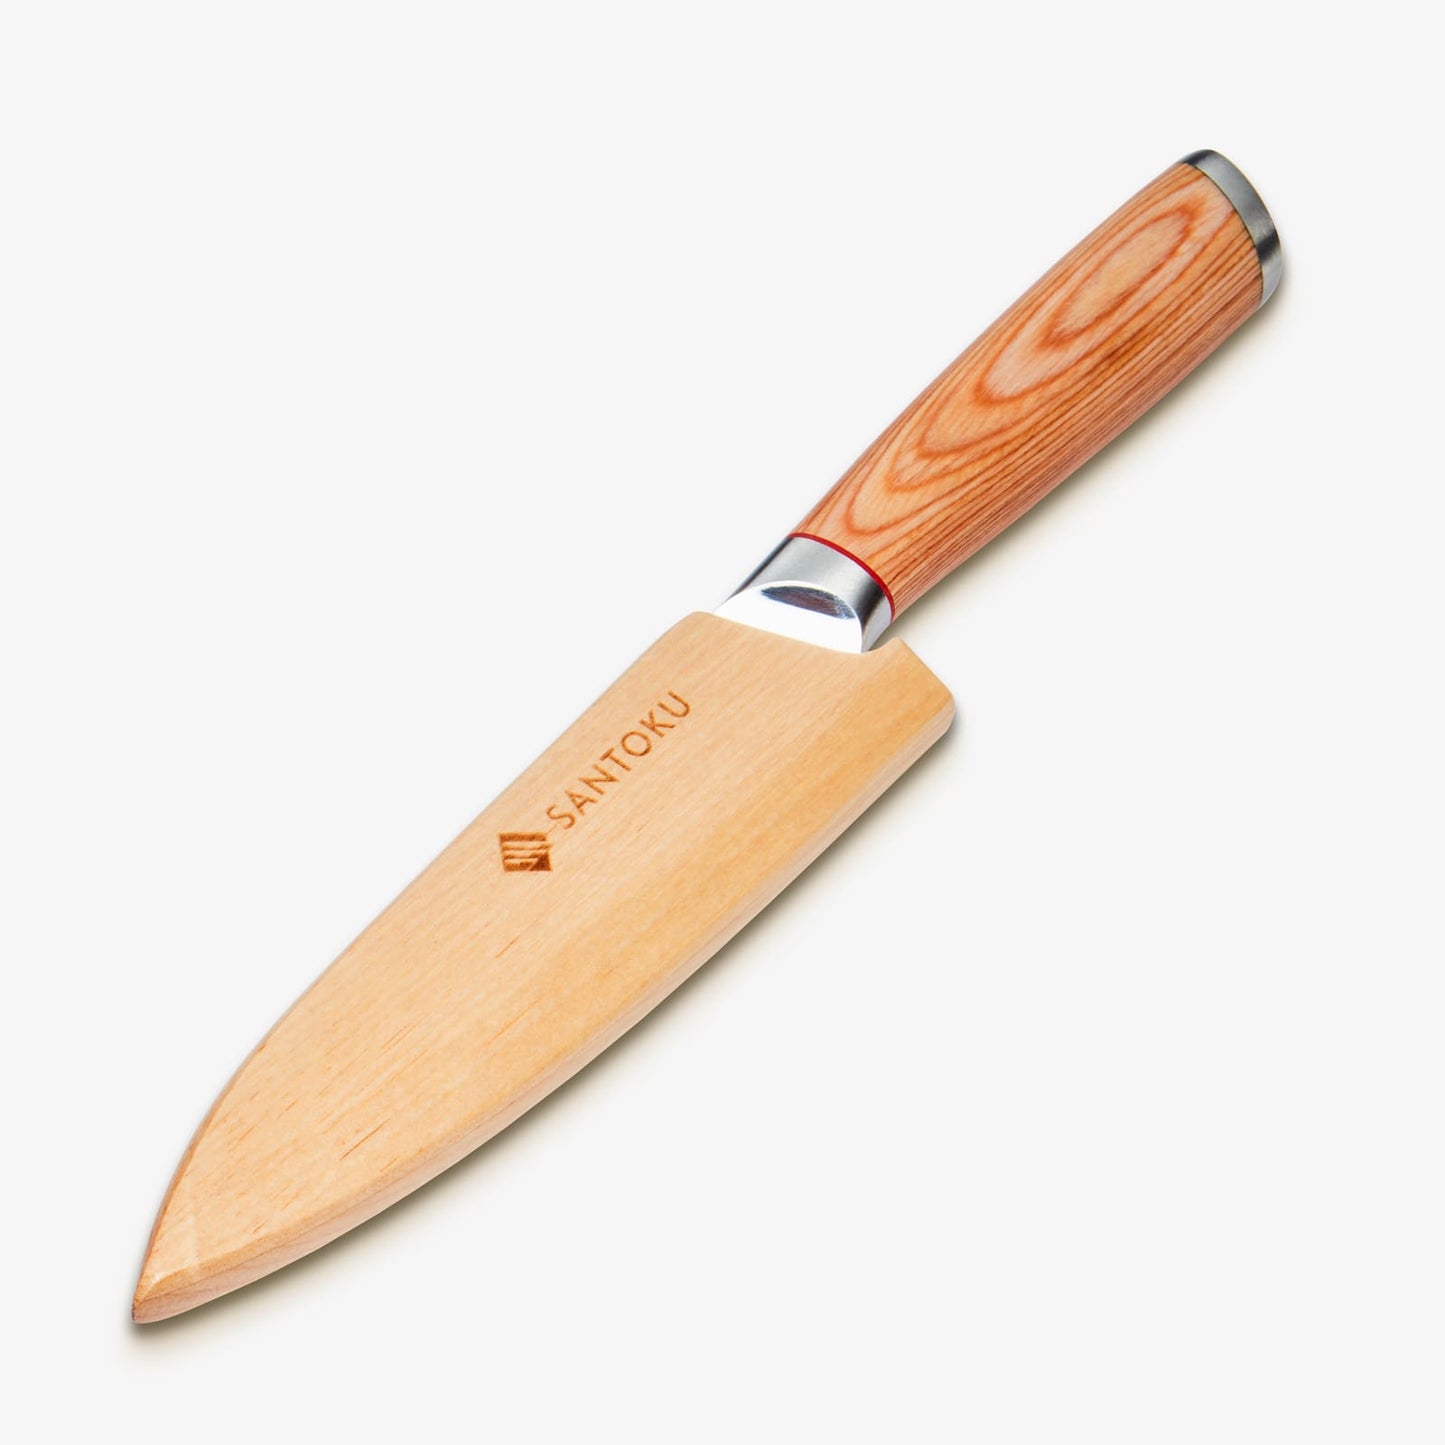 Haruta (はる はる) 5 tommer værktøjskniv